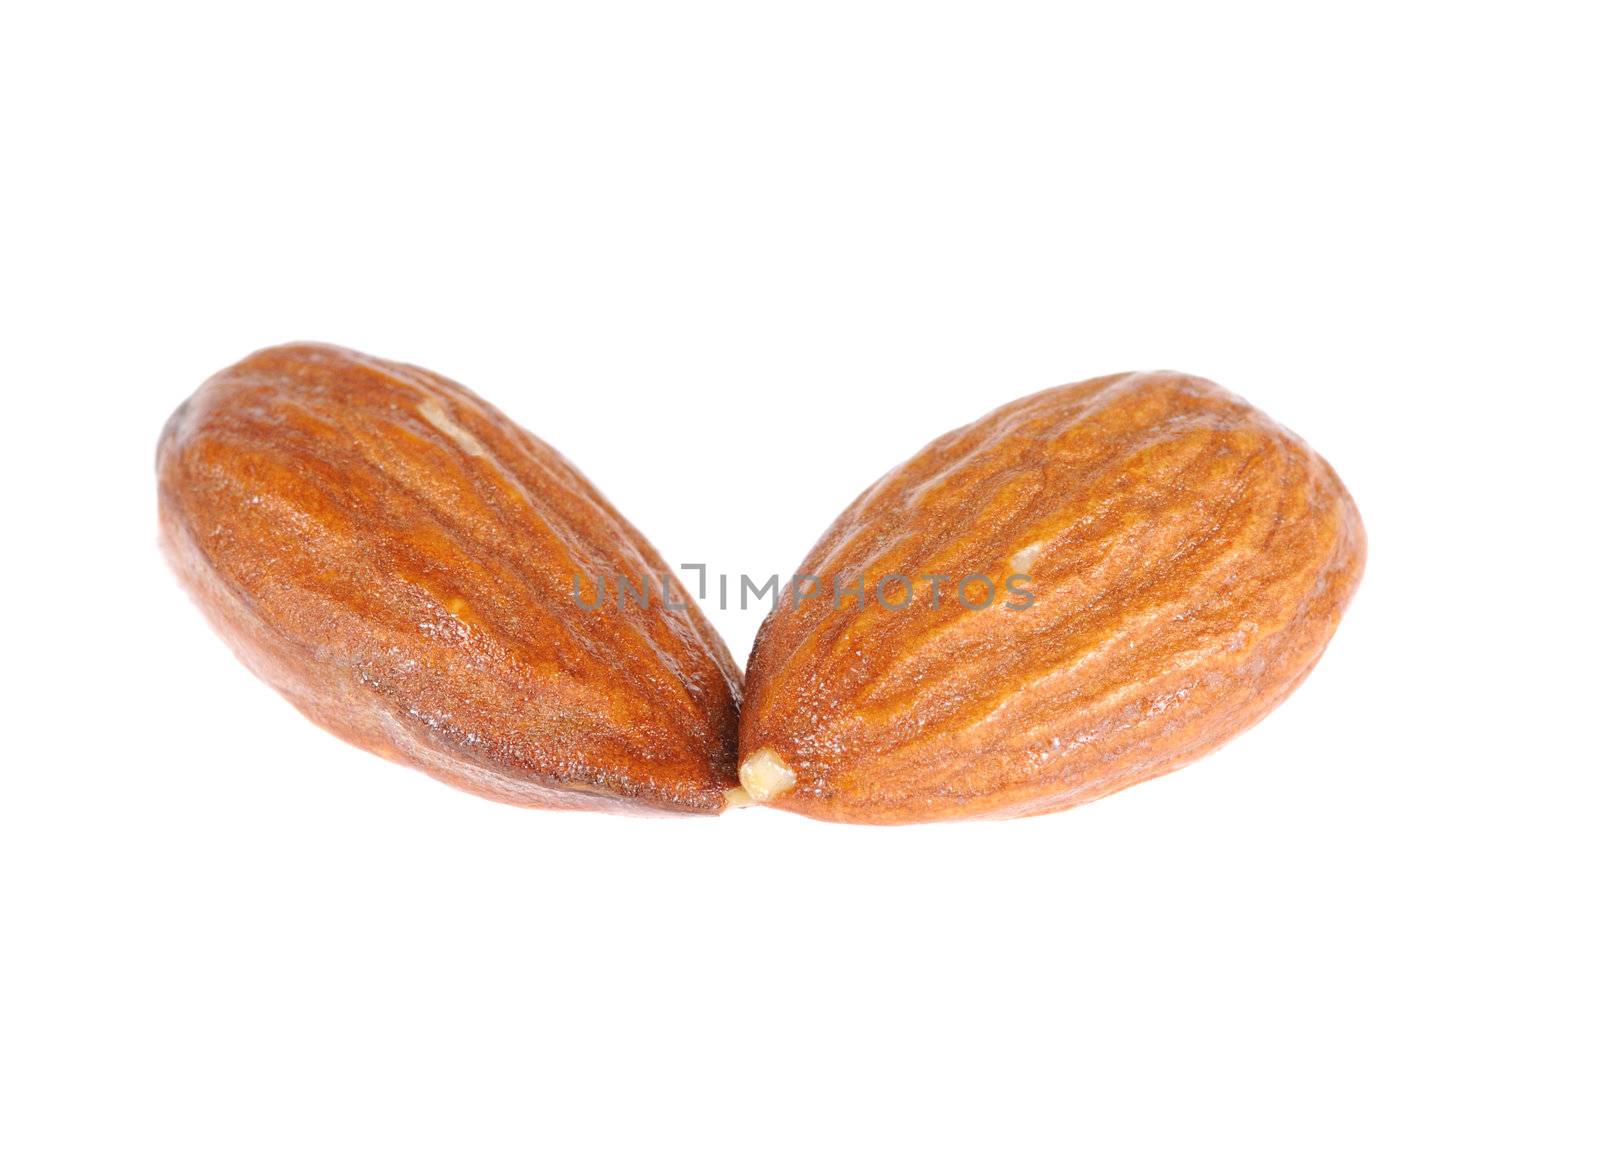 almond by uriy2007